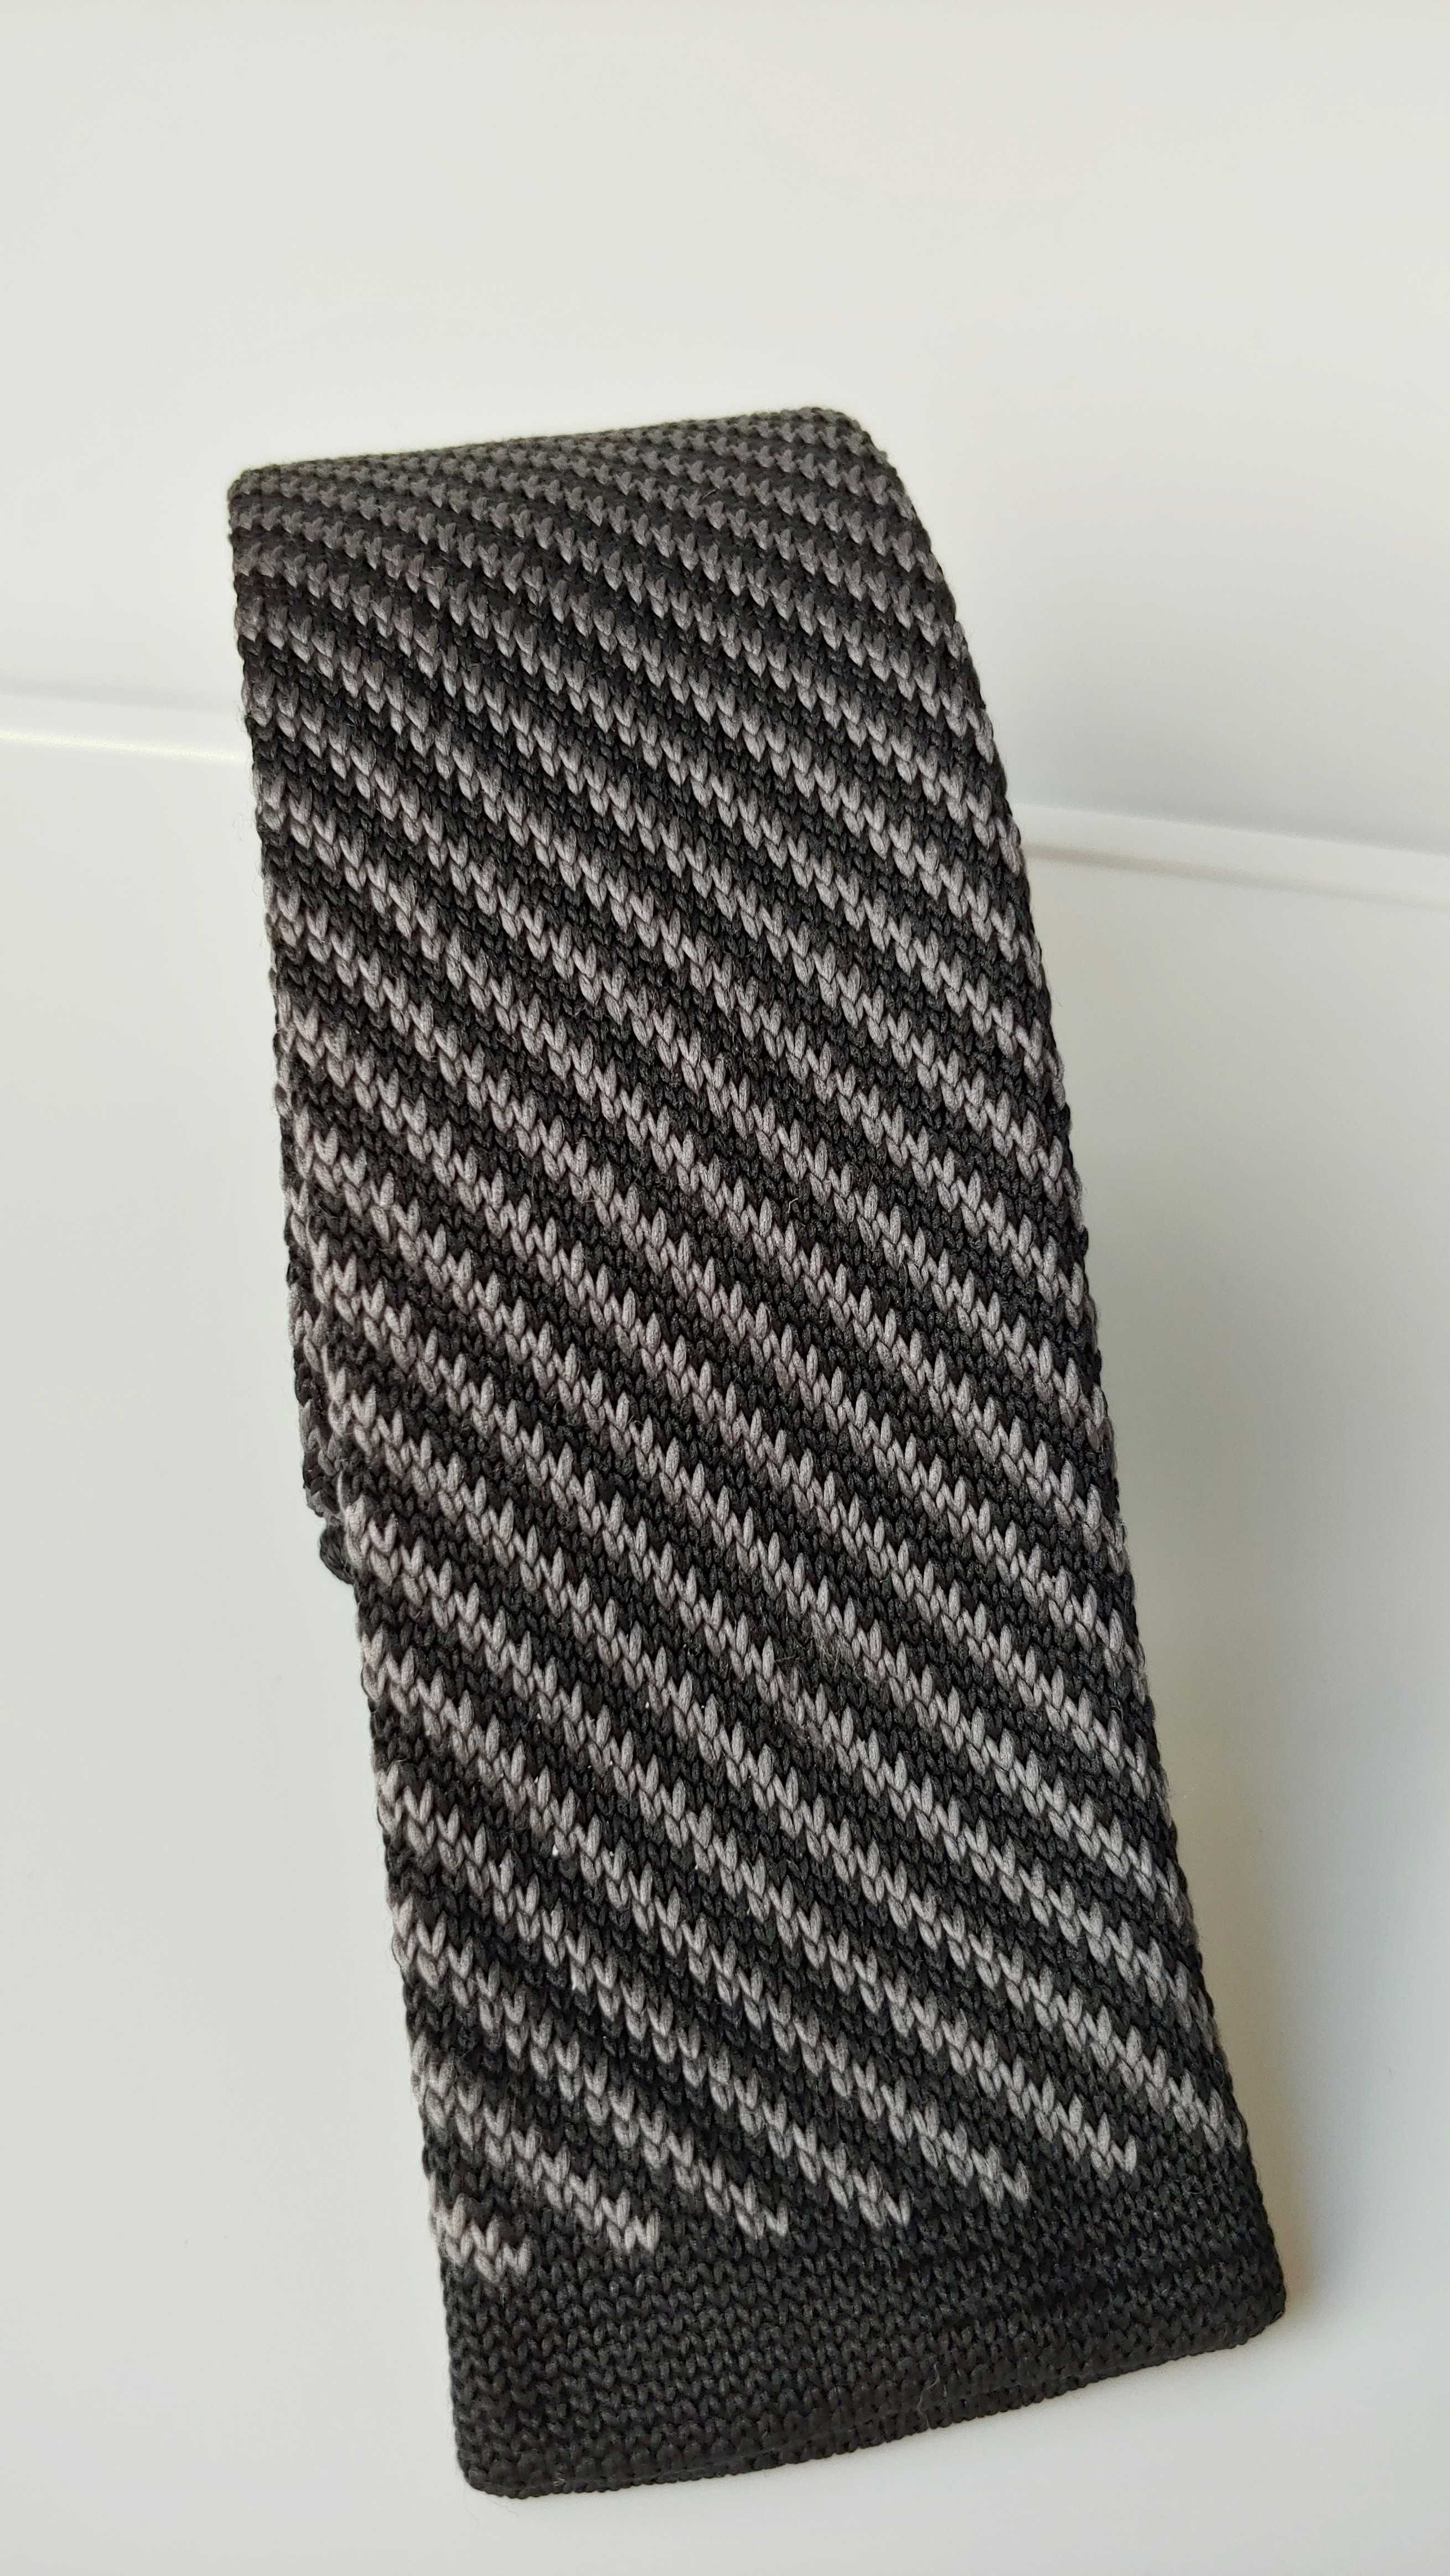 Krawat tzw. knot do koszuli. Super klasyczna kolorystyka polecam